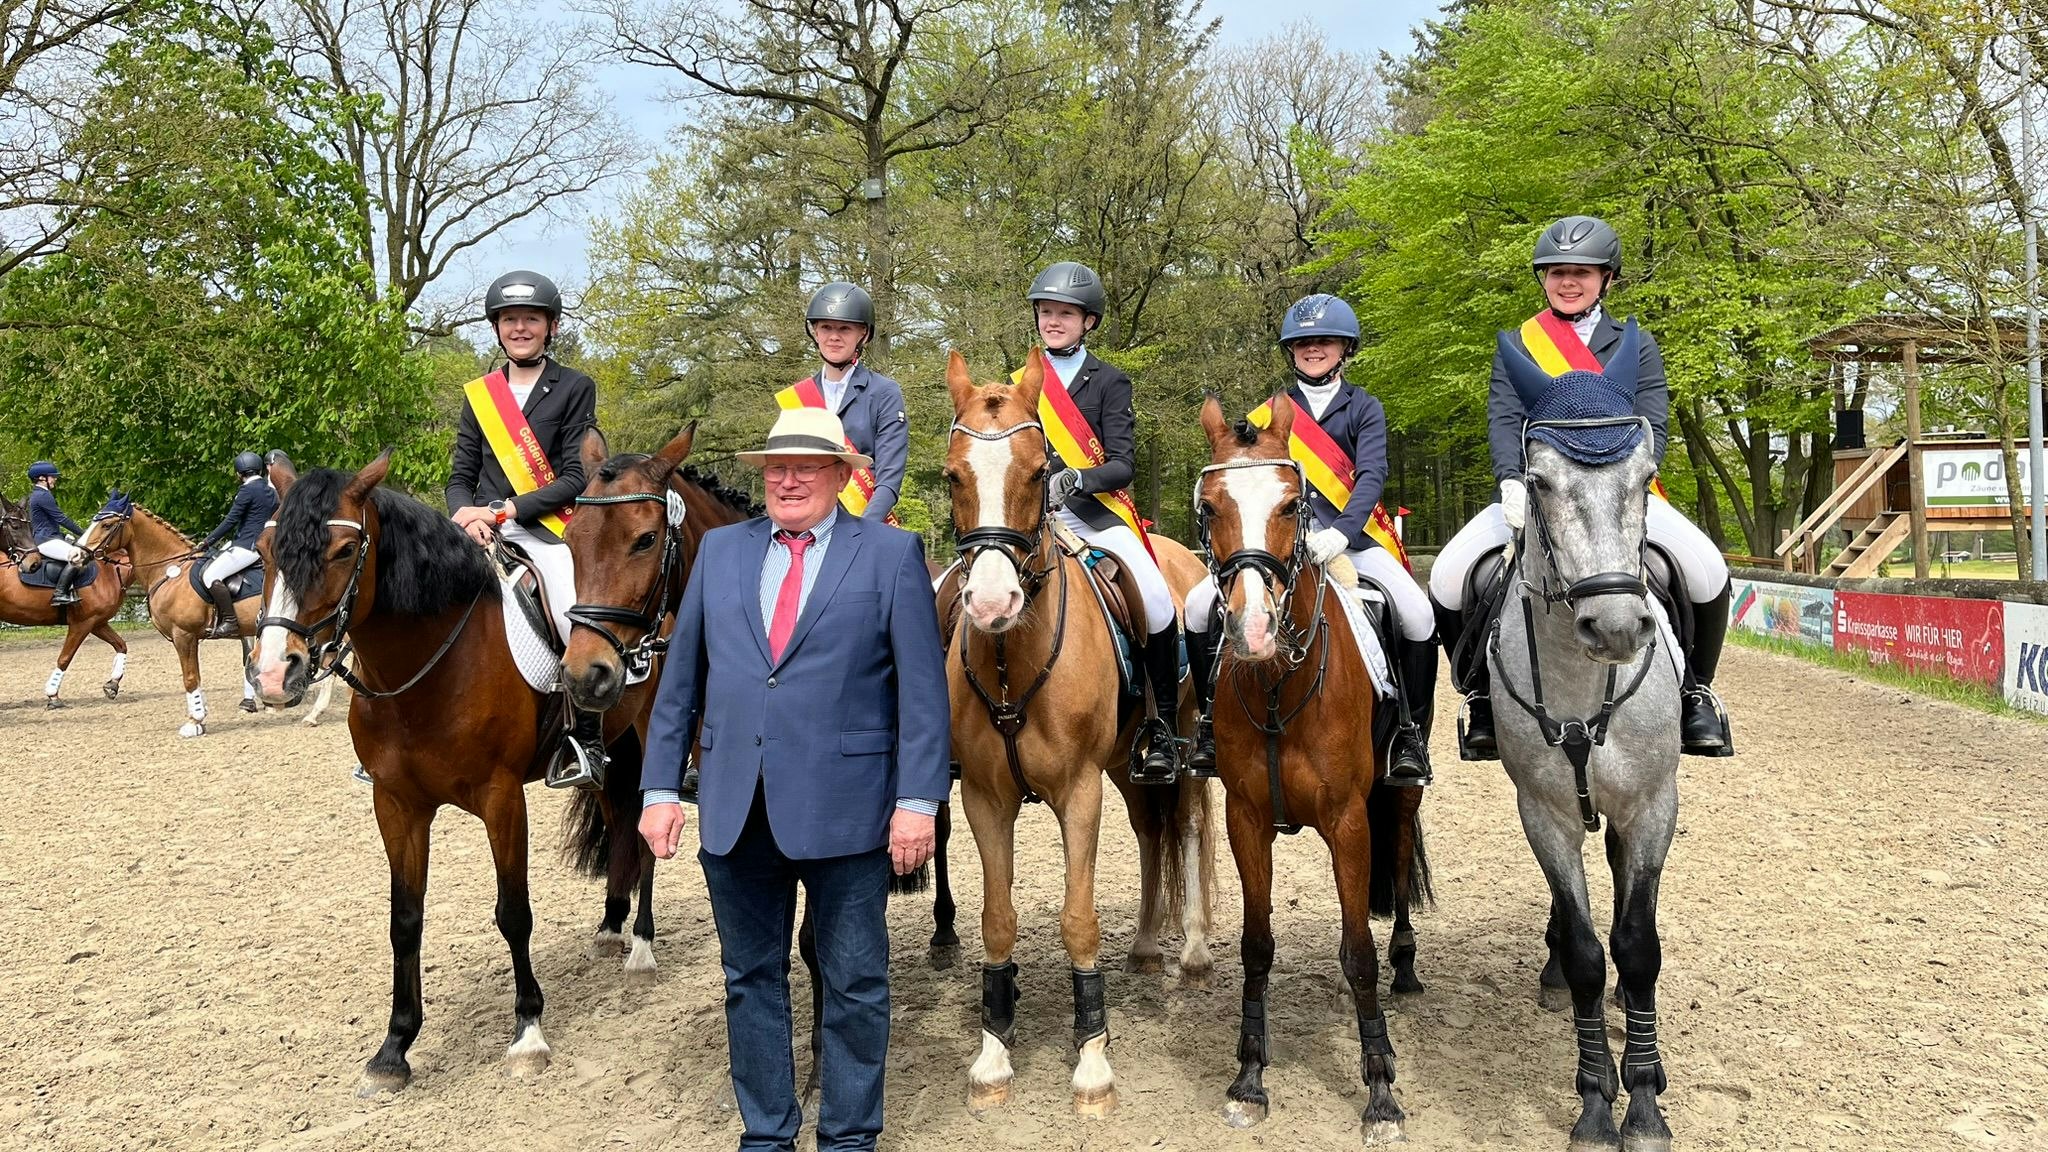 Strahlende Sieger: Wilhelm Brundiers (vorne) freut sich über den großen Erfolg seiner Reiterinnen und Reiter. Foto: Kotschofsky